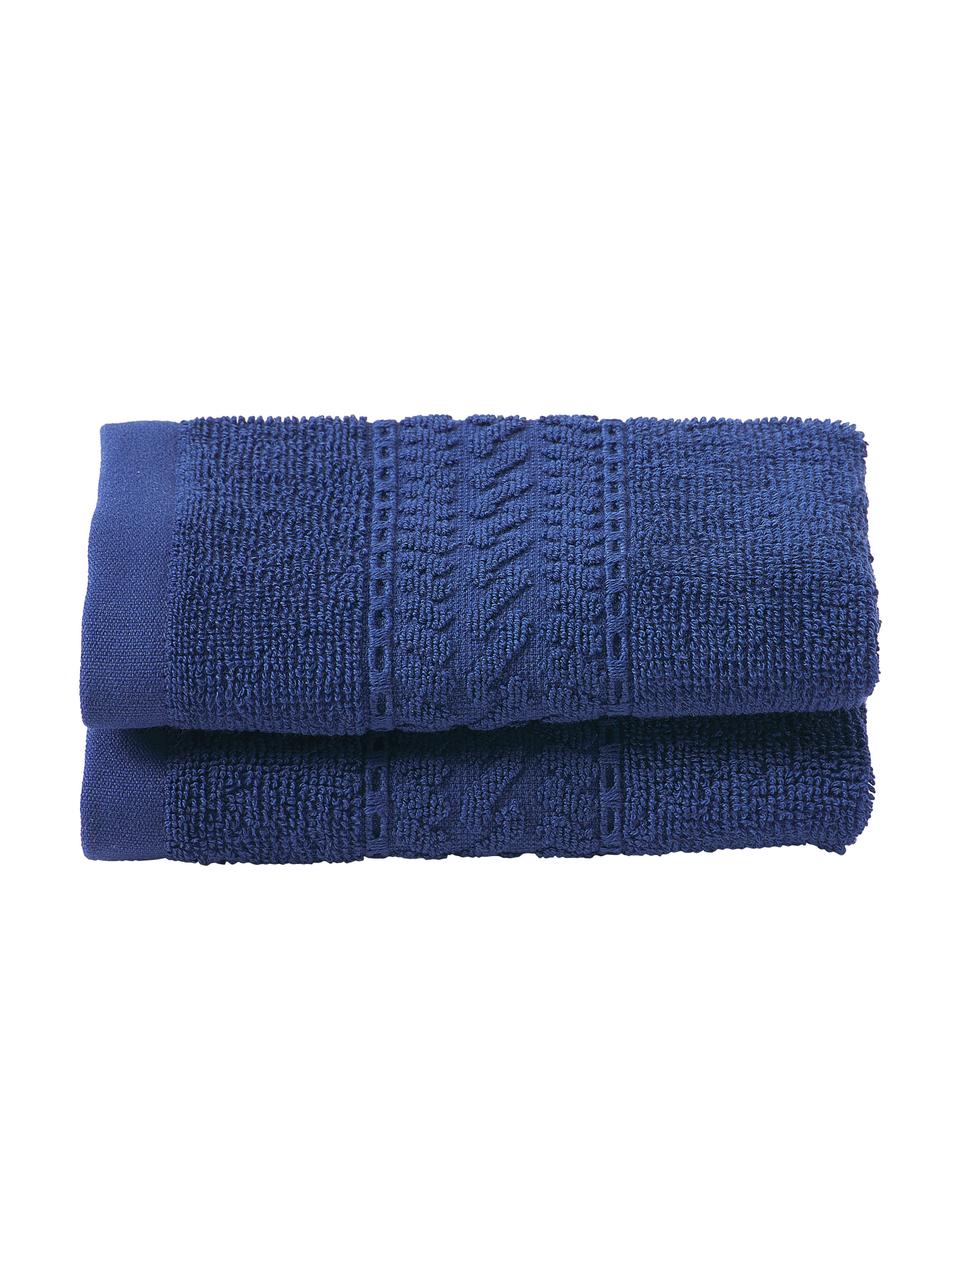 Toallas Cordelia, Azul oscuro, Toalla tocador, An 30 x L 50 cm, 2 uds.